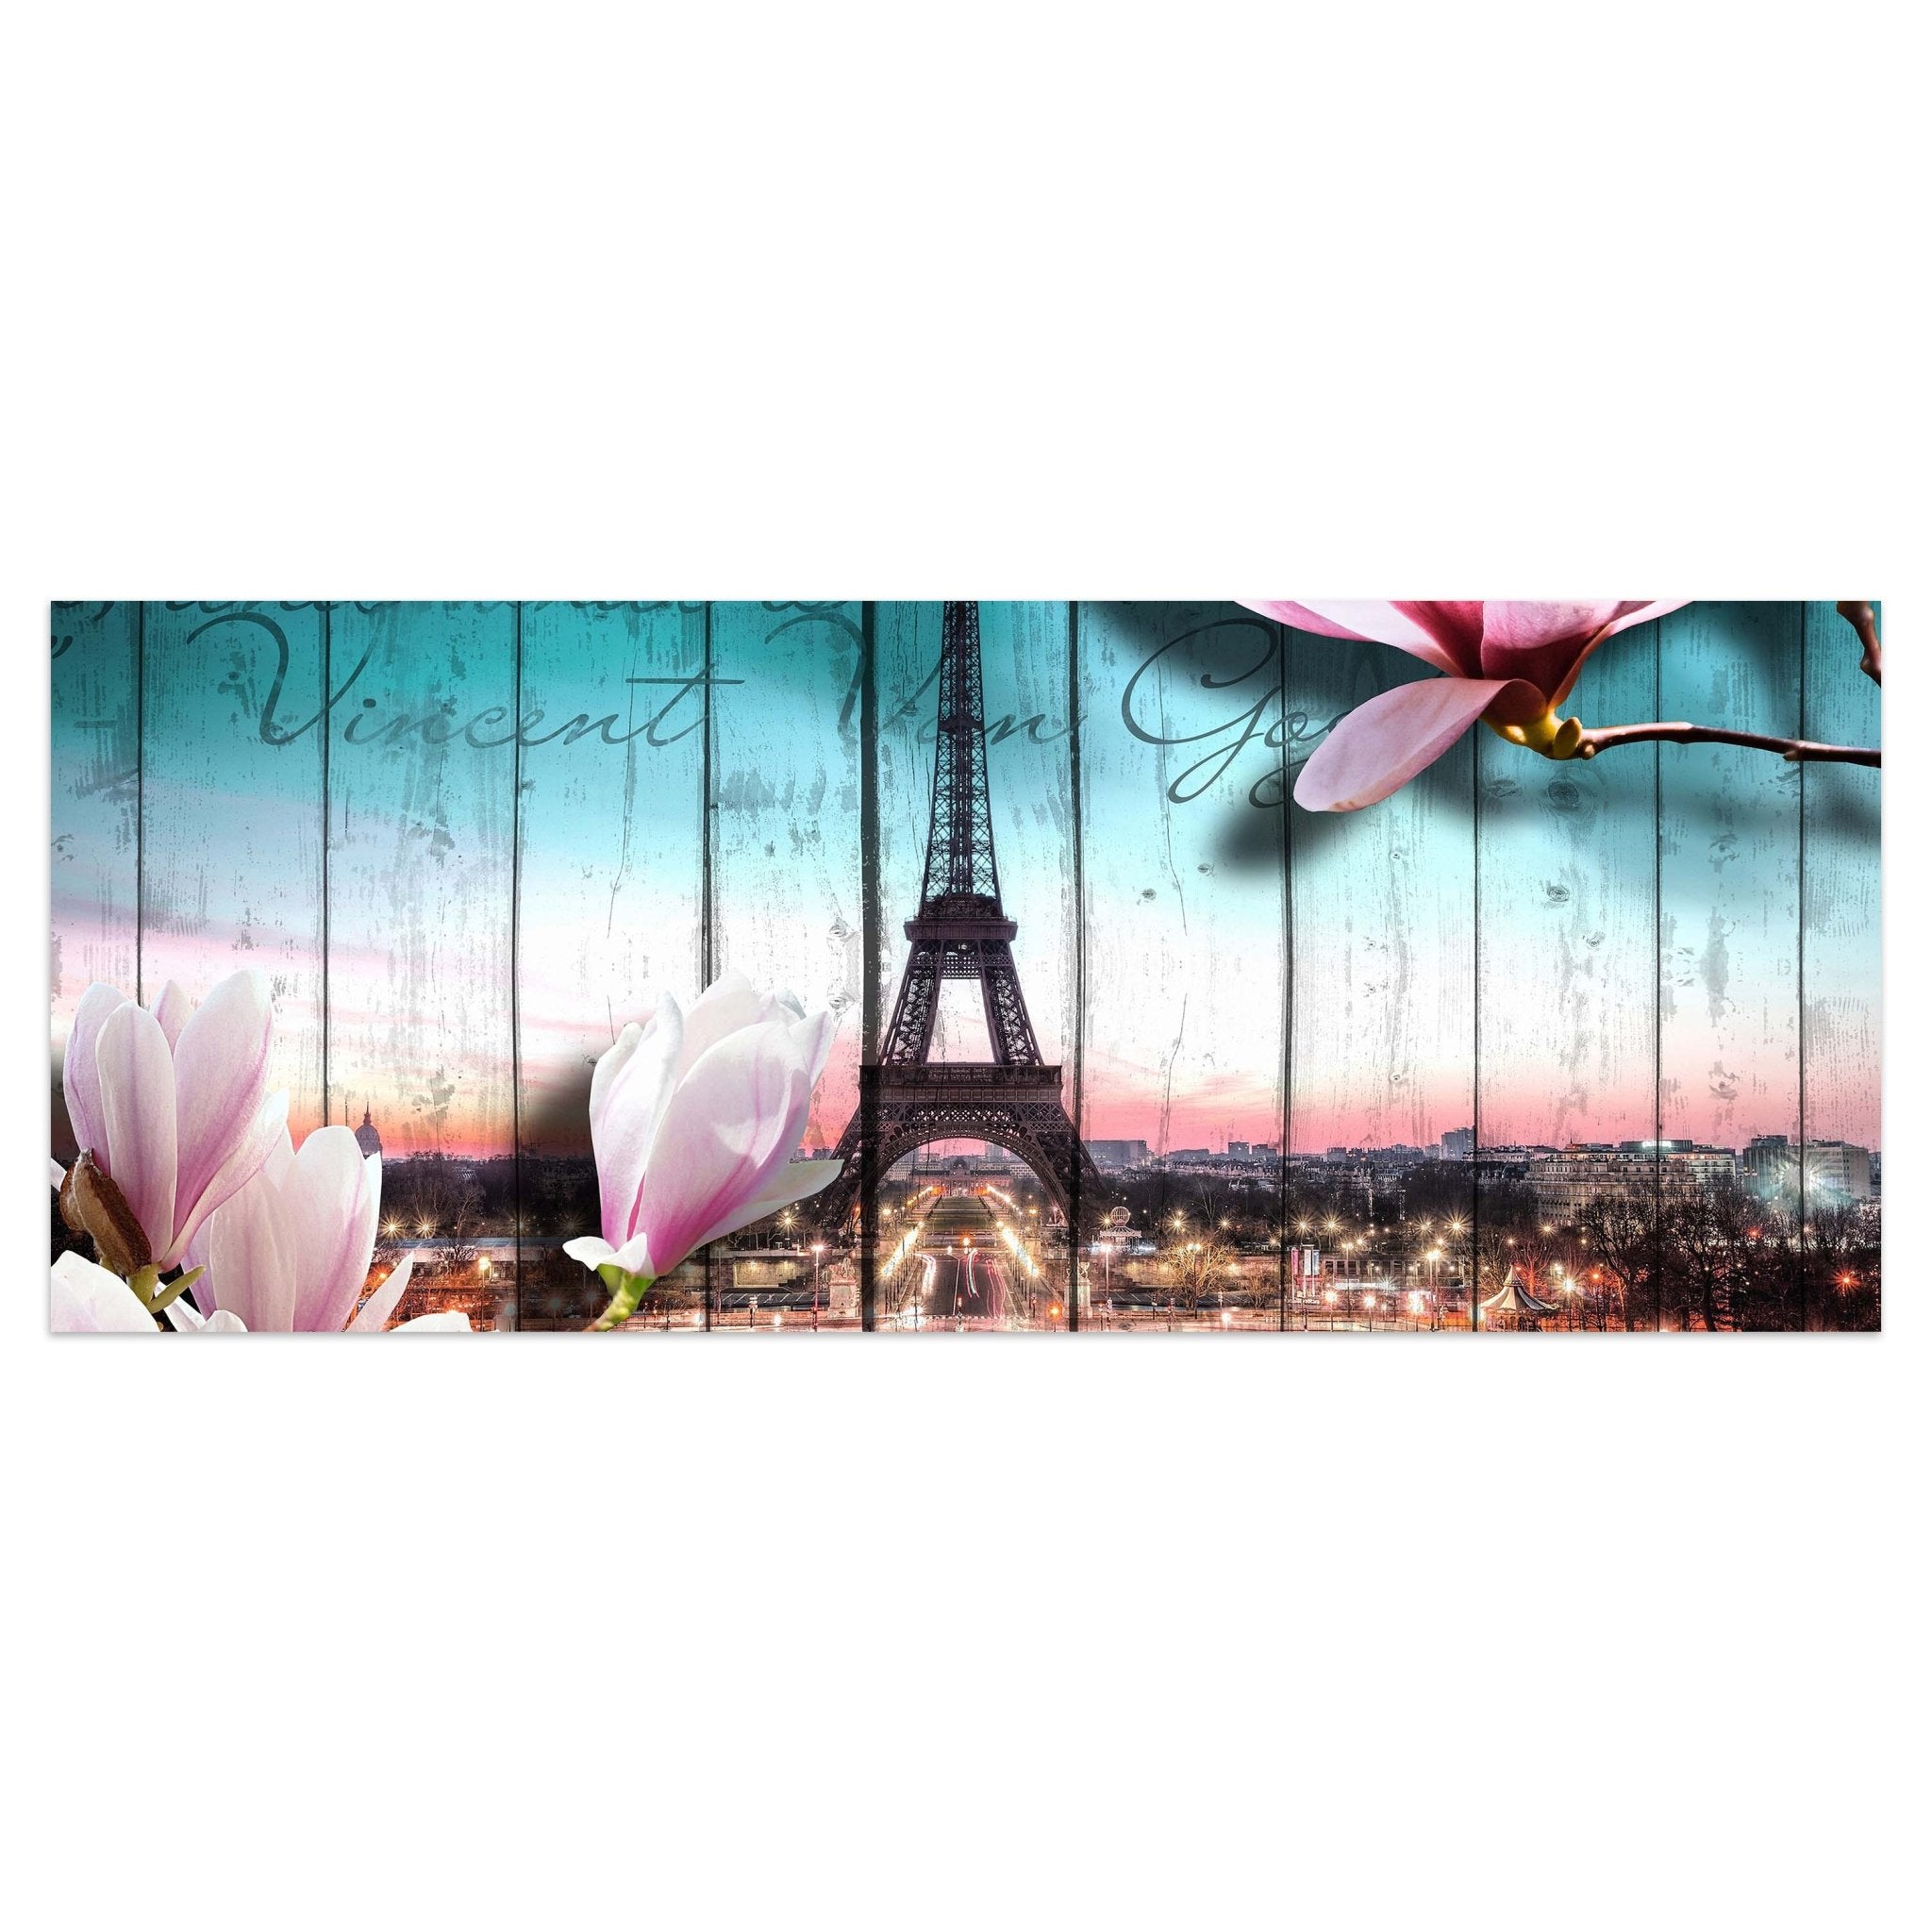 Leinwandbild Holz Blüten Paris Eiffelturm M0543 kaufen - Bild 1